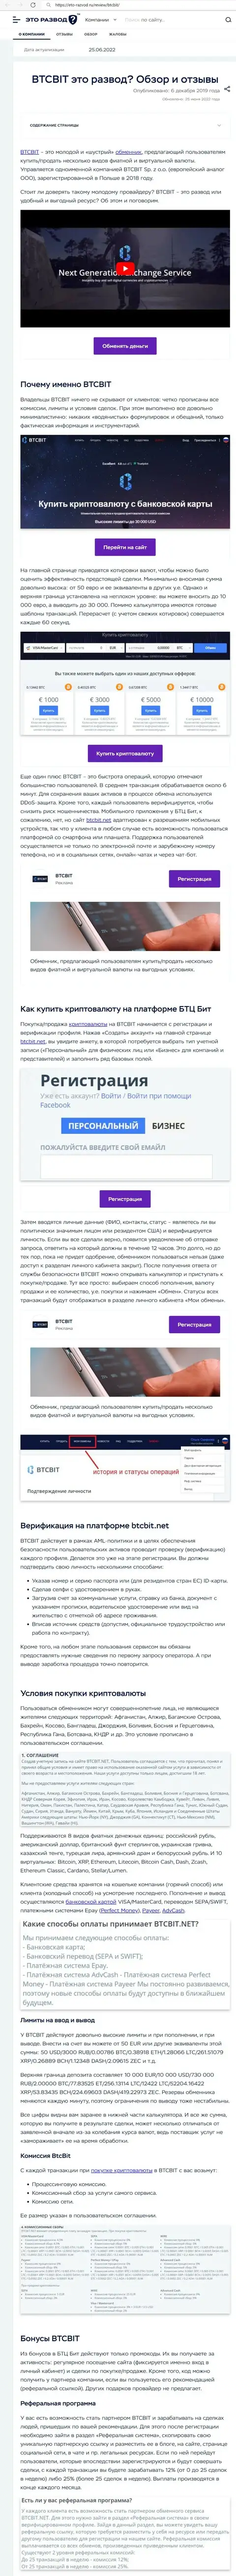 Разбор деятельности и условия предоставления услуг online обменки BTCBit в обзоре на портале Eto Razvod Ru